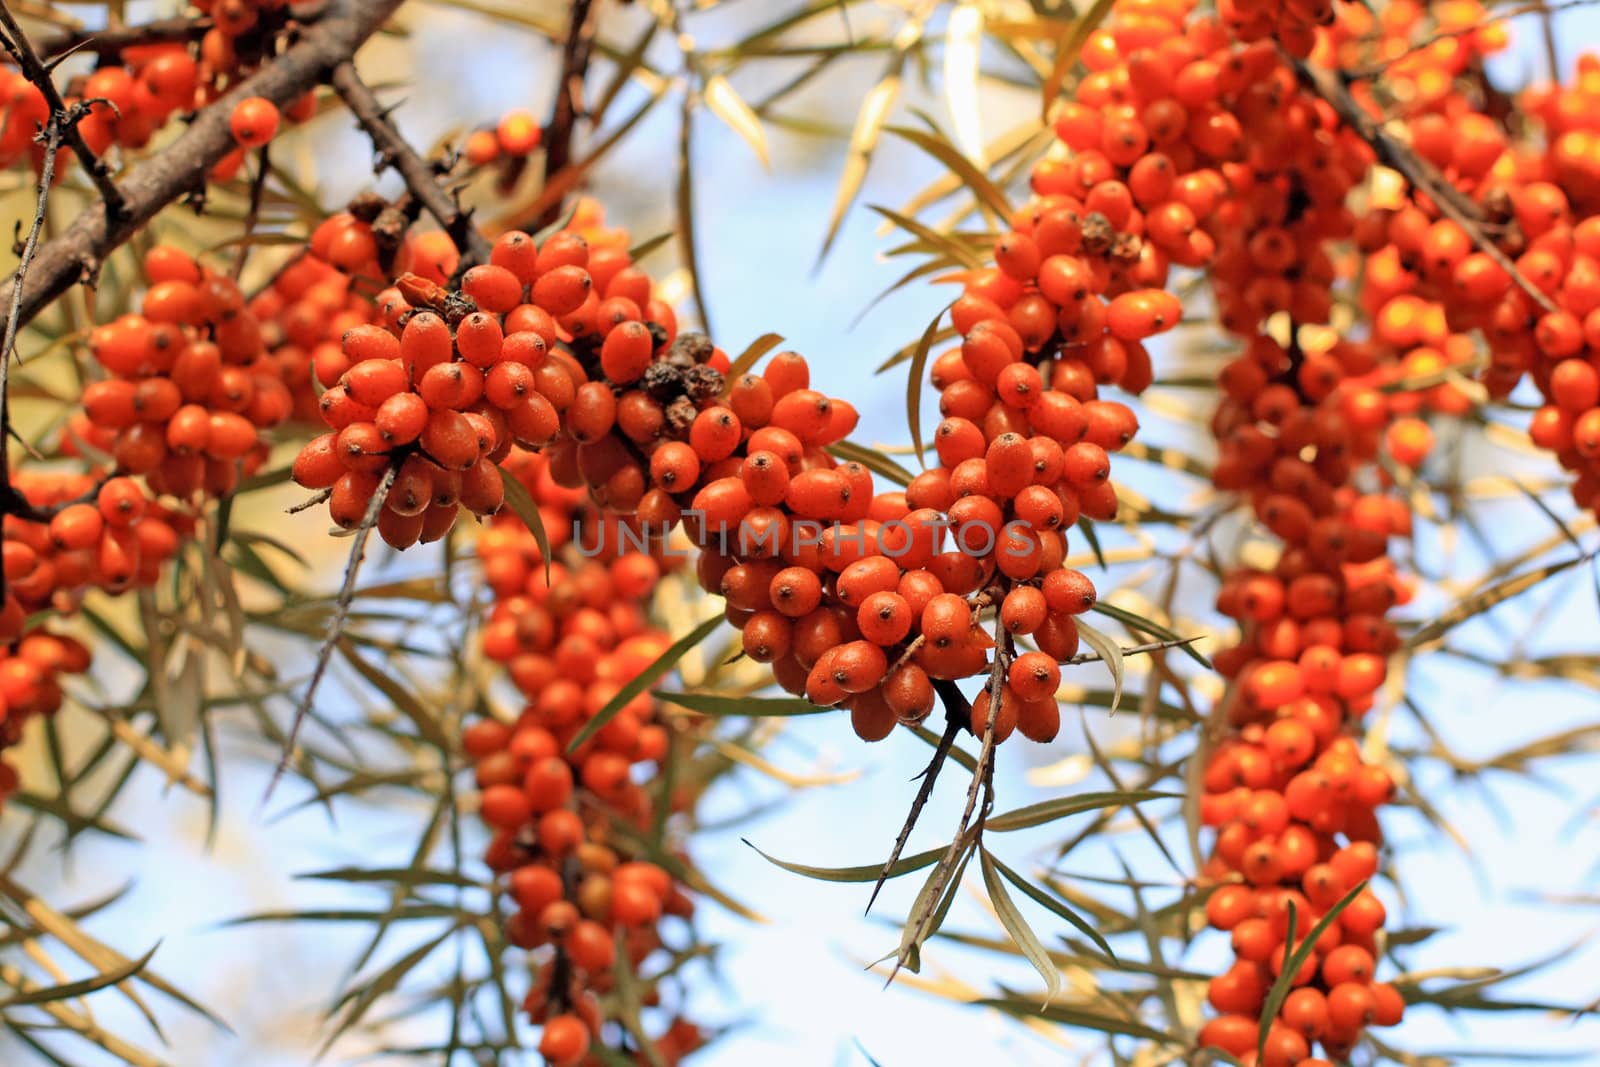 Sea-bucktorn berries by Lessadar